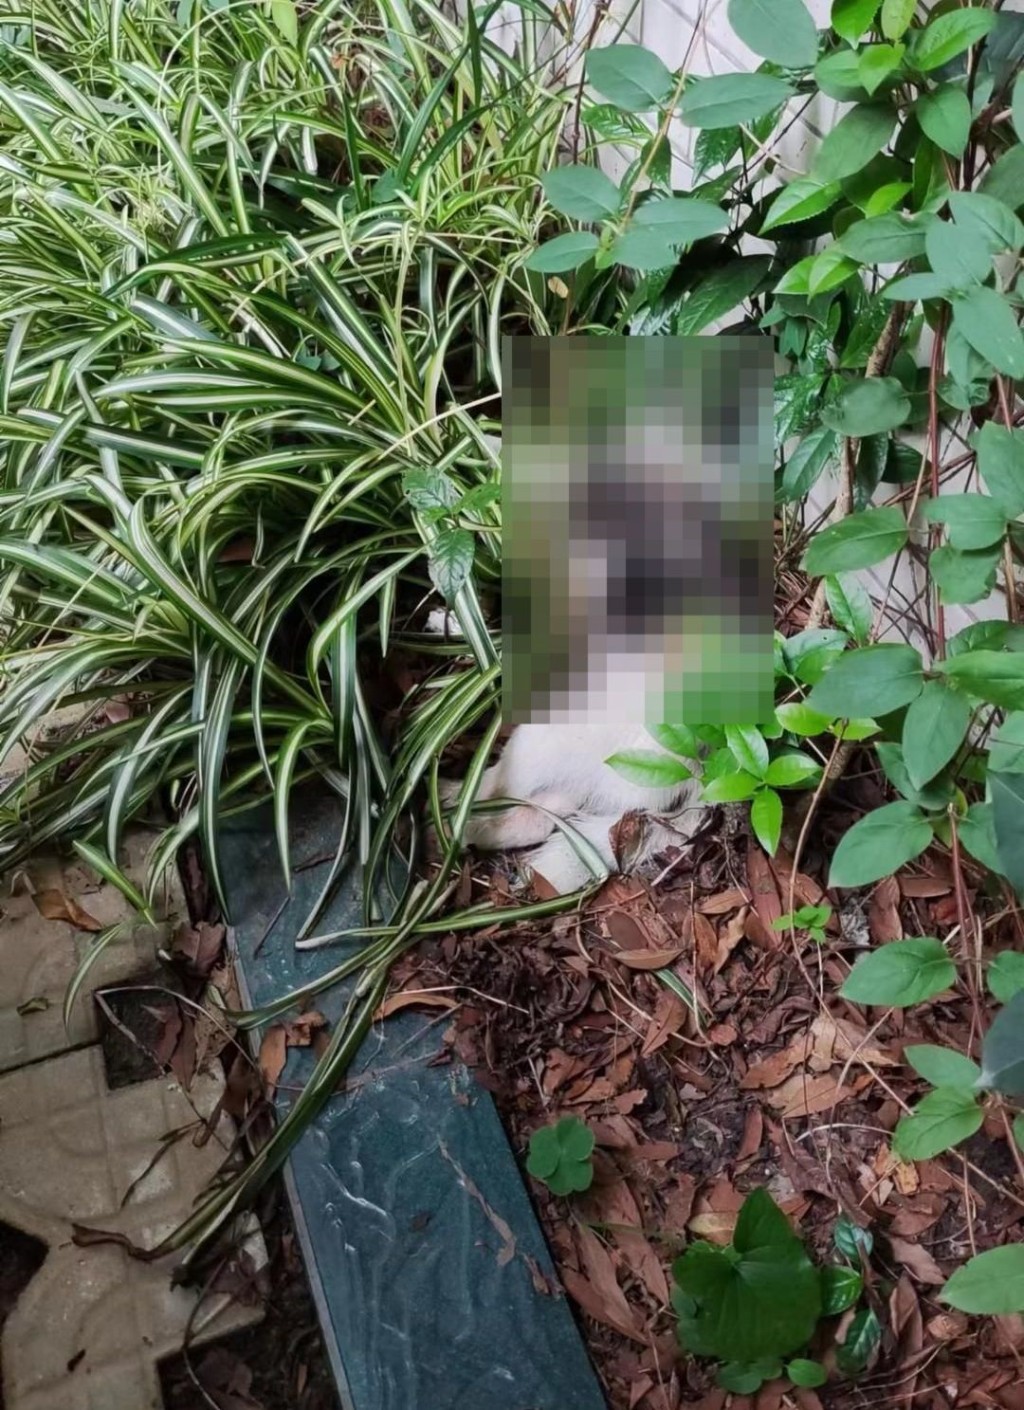 網民發布圖片稱有狗被毒死。